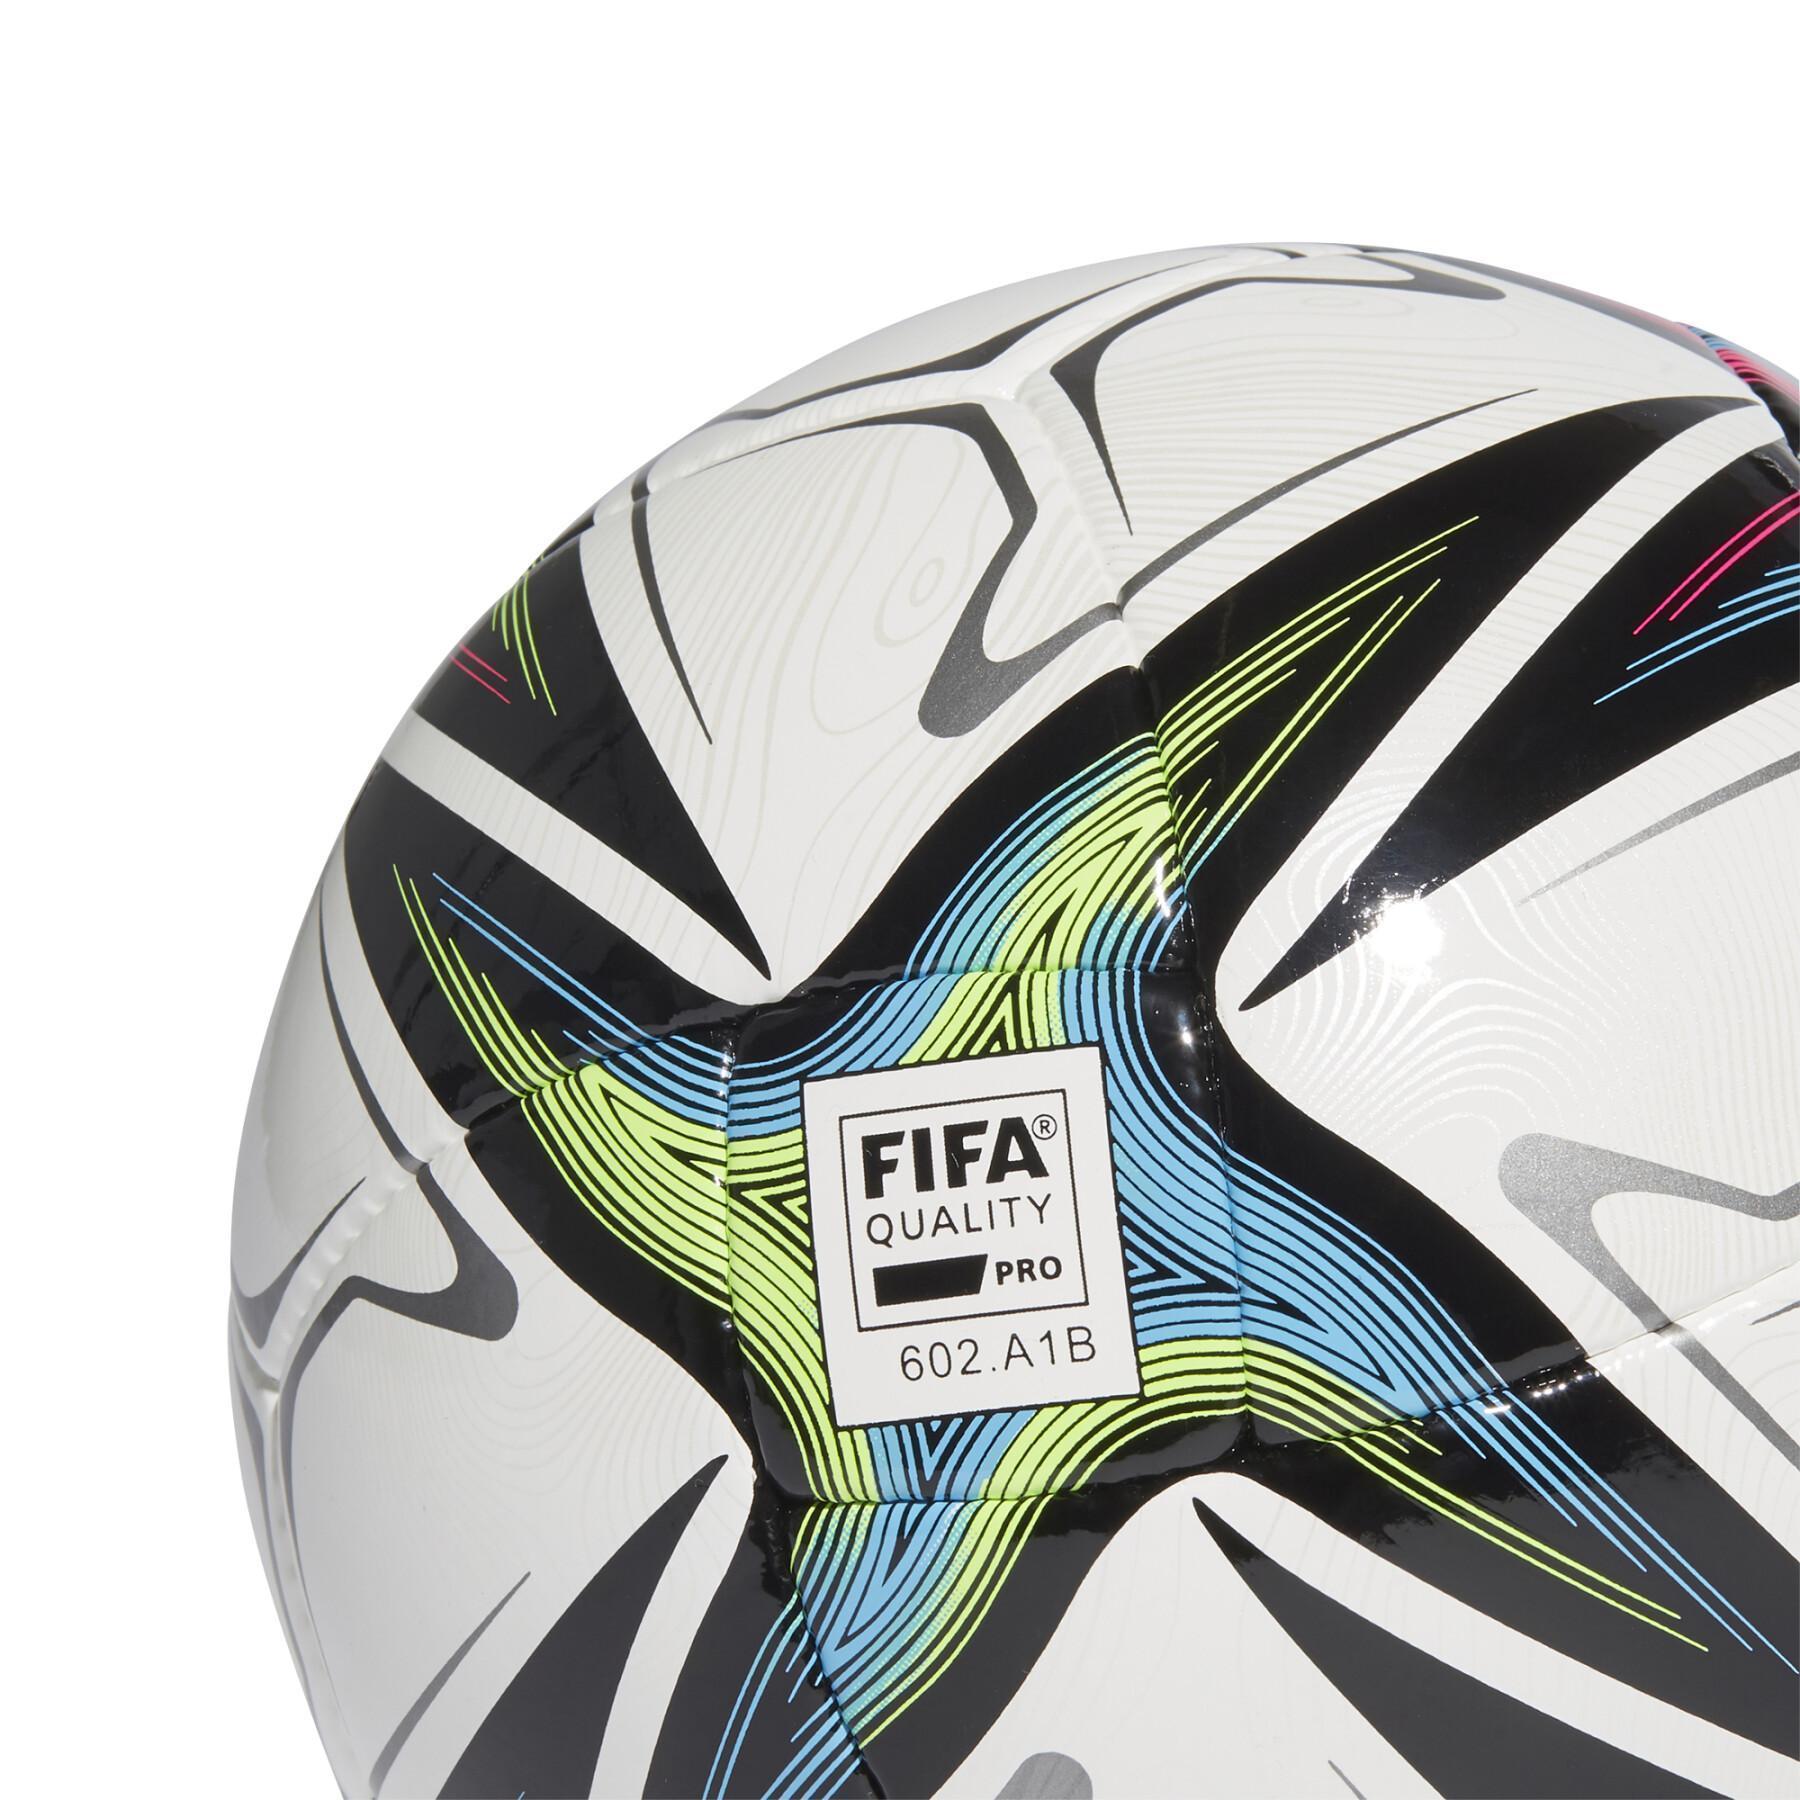 Ballon de football adidas Conext 21 Pro Sala